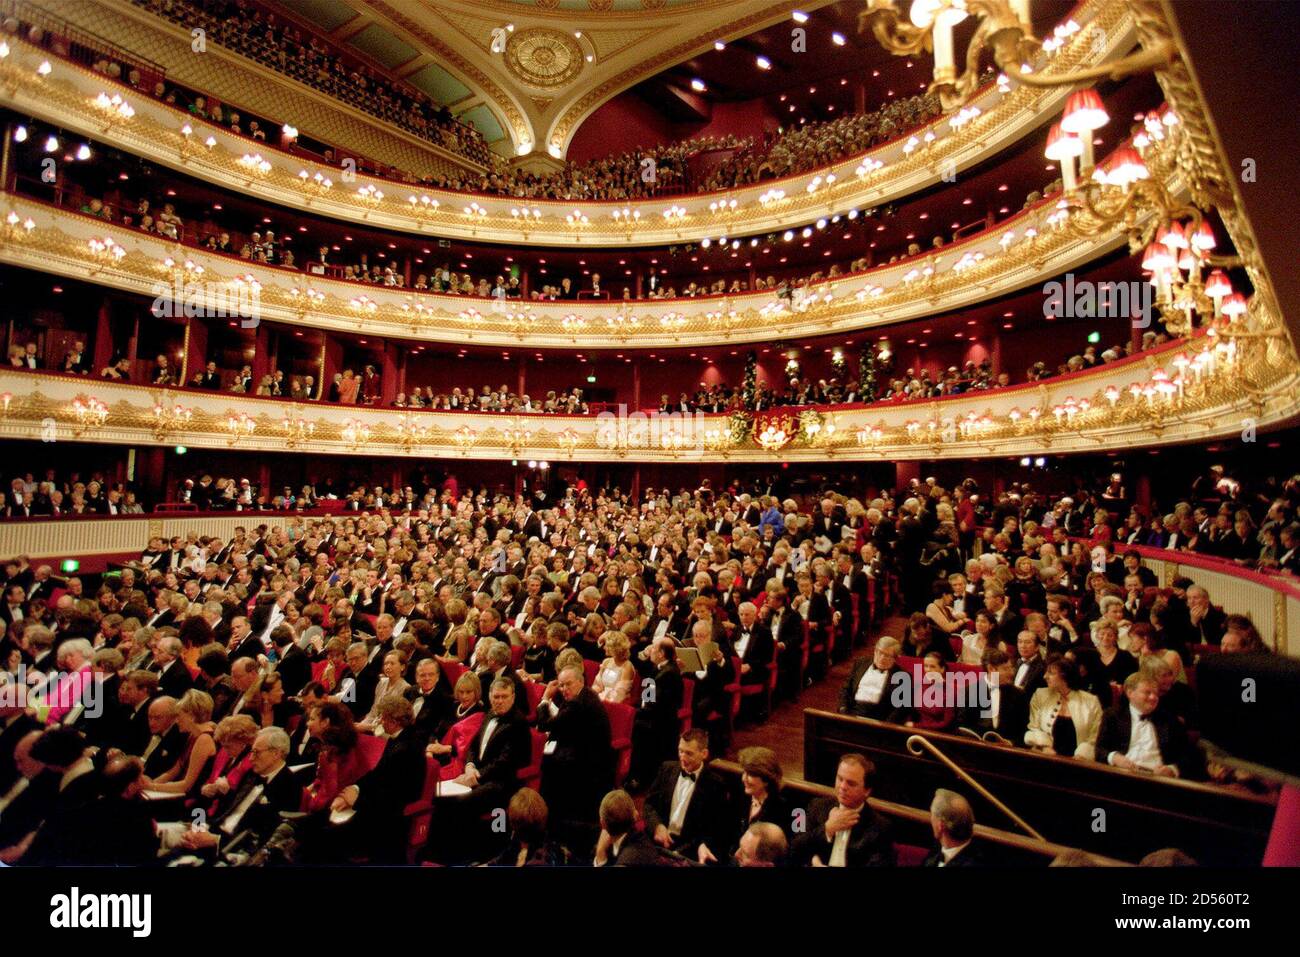 Theatre audience. Ковент Гарден театр. Королевский оперный театр в Лондоне. Зрительный зал Ковент Гарден. Сцена опера Ковент Гарден.